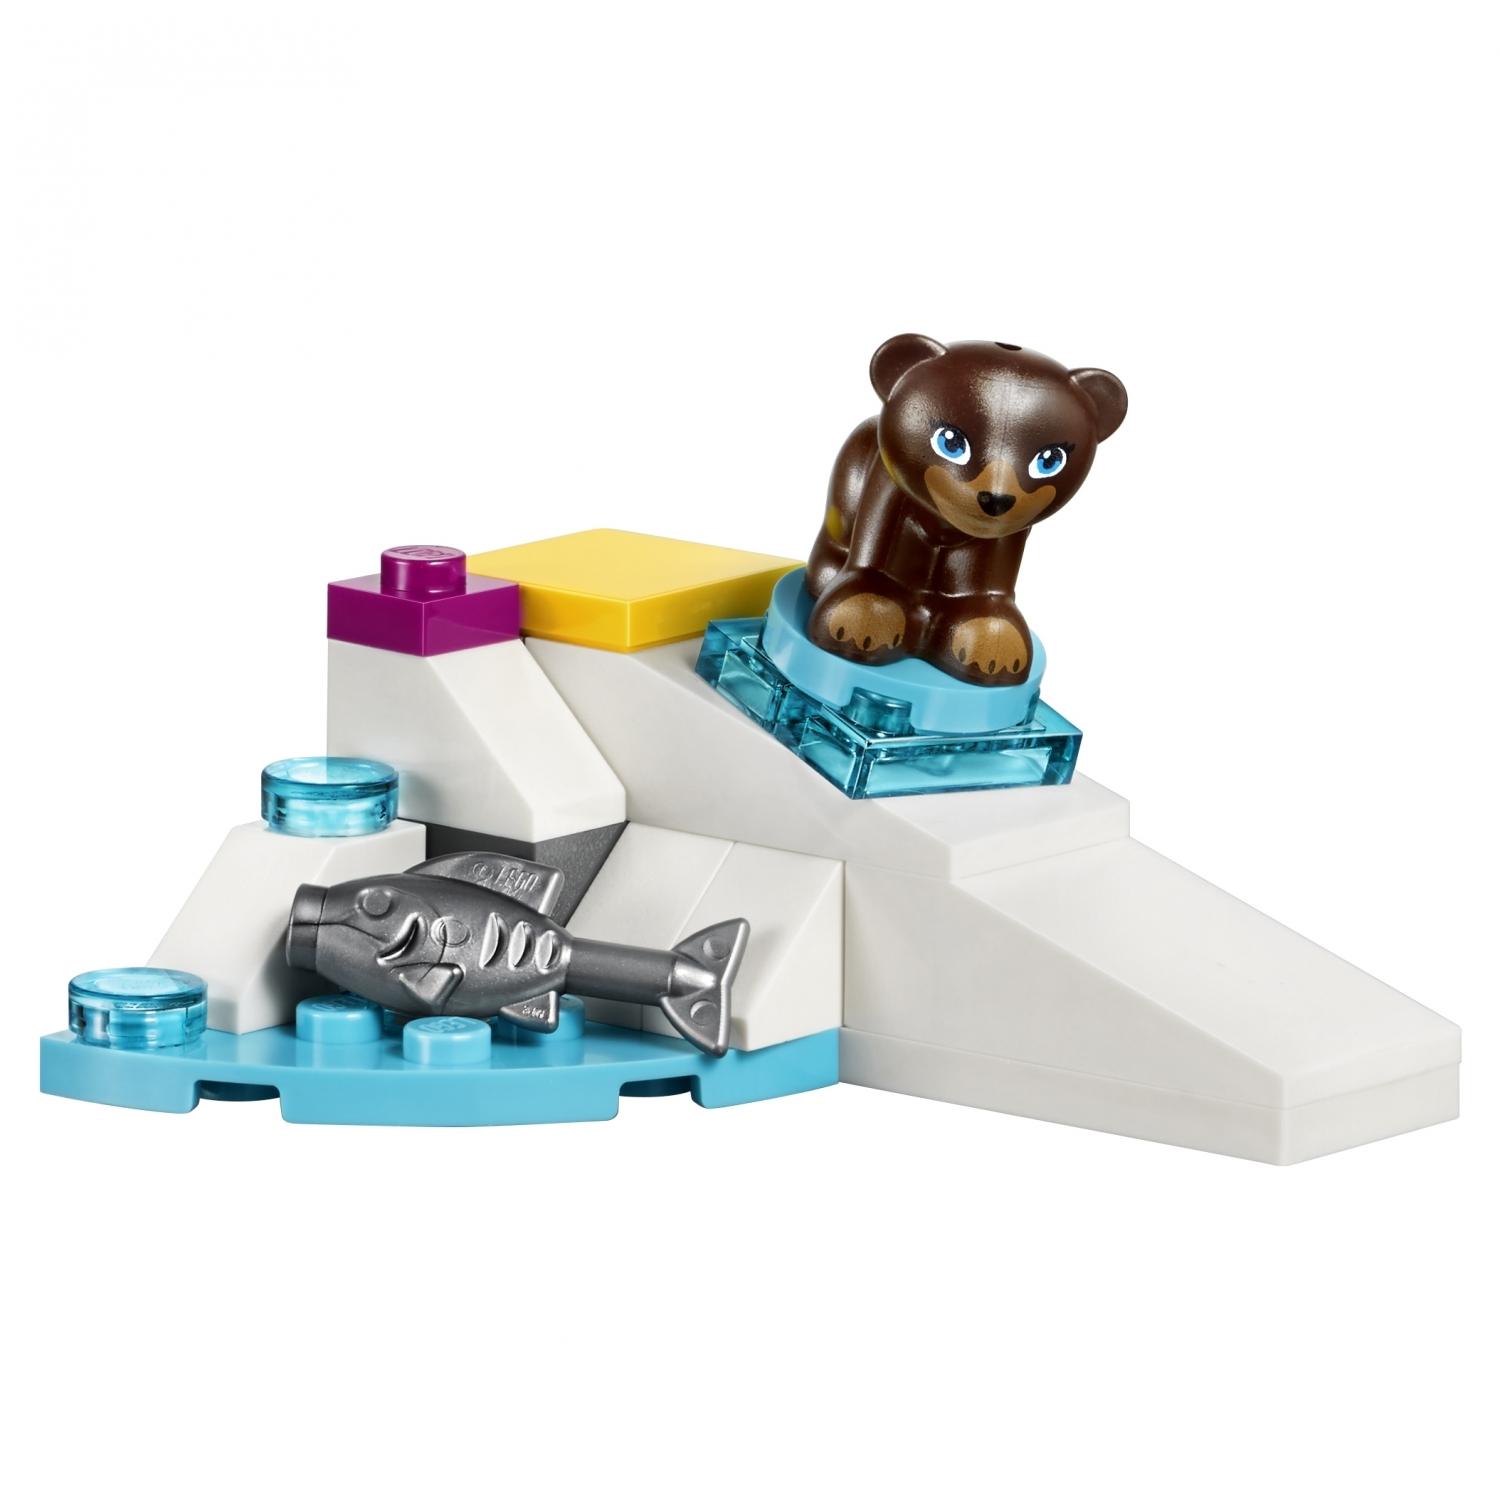 Lego Friends 41324 Горнолыжный курорт: подъёмник